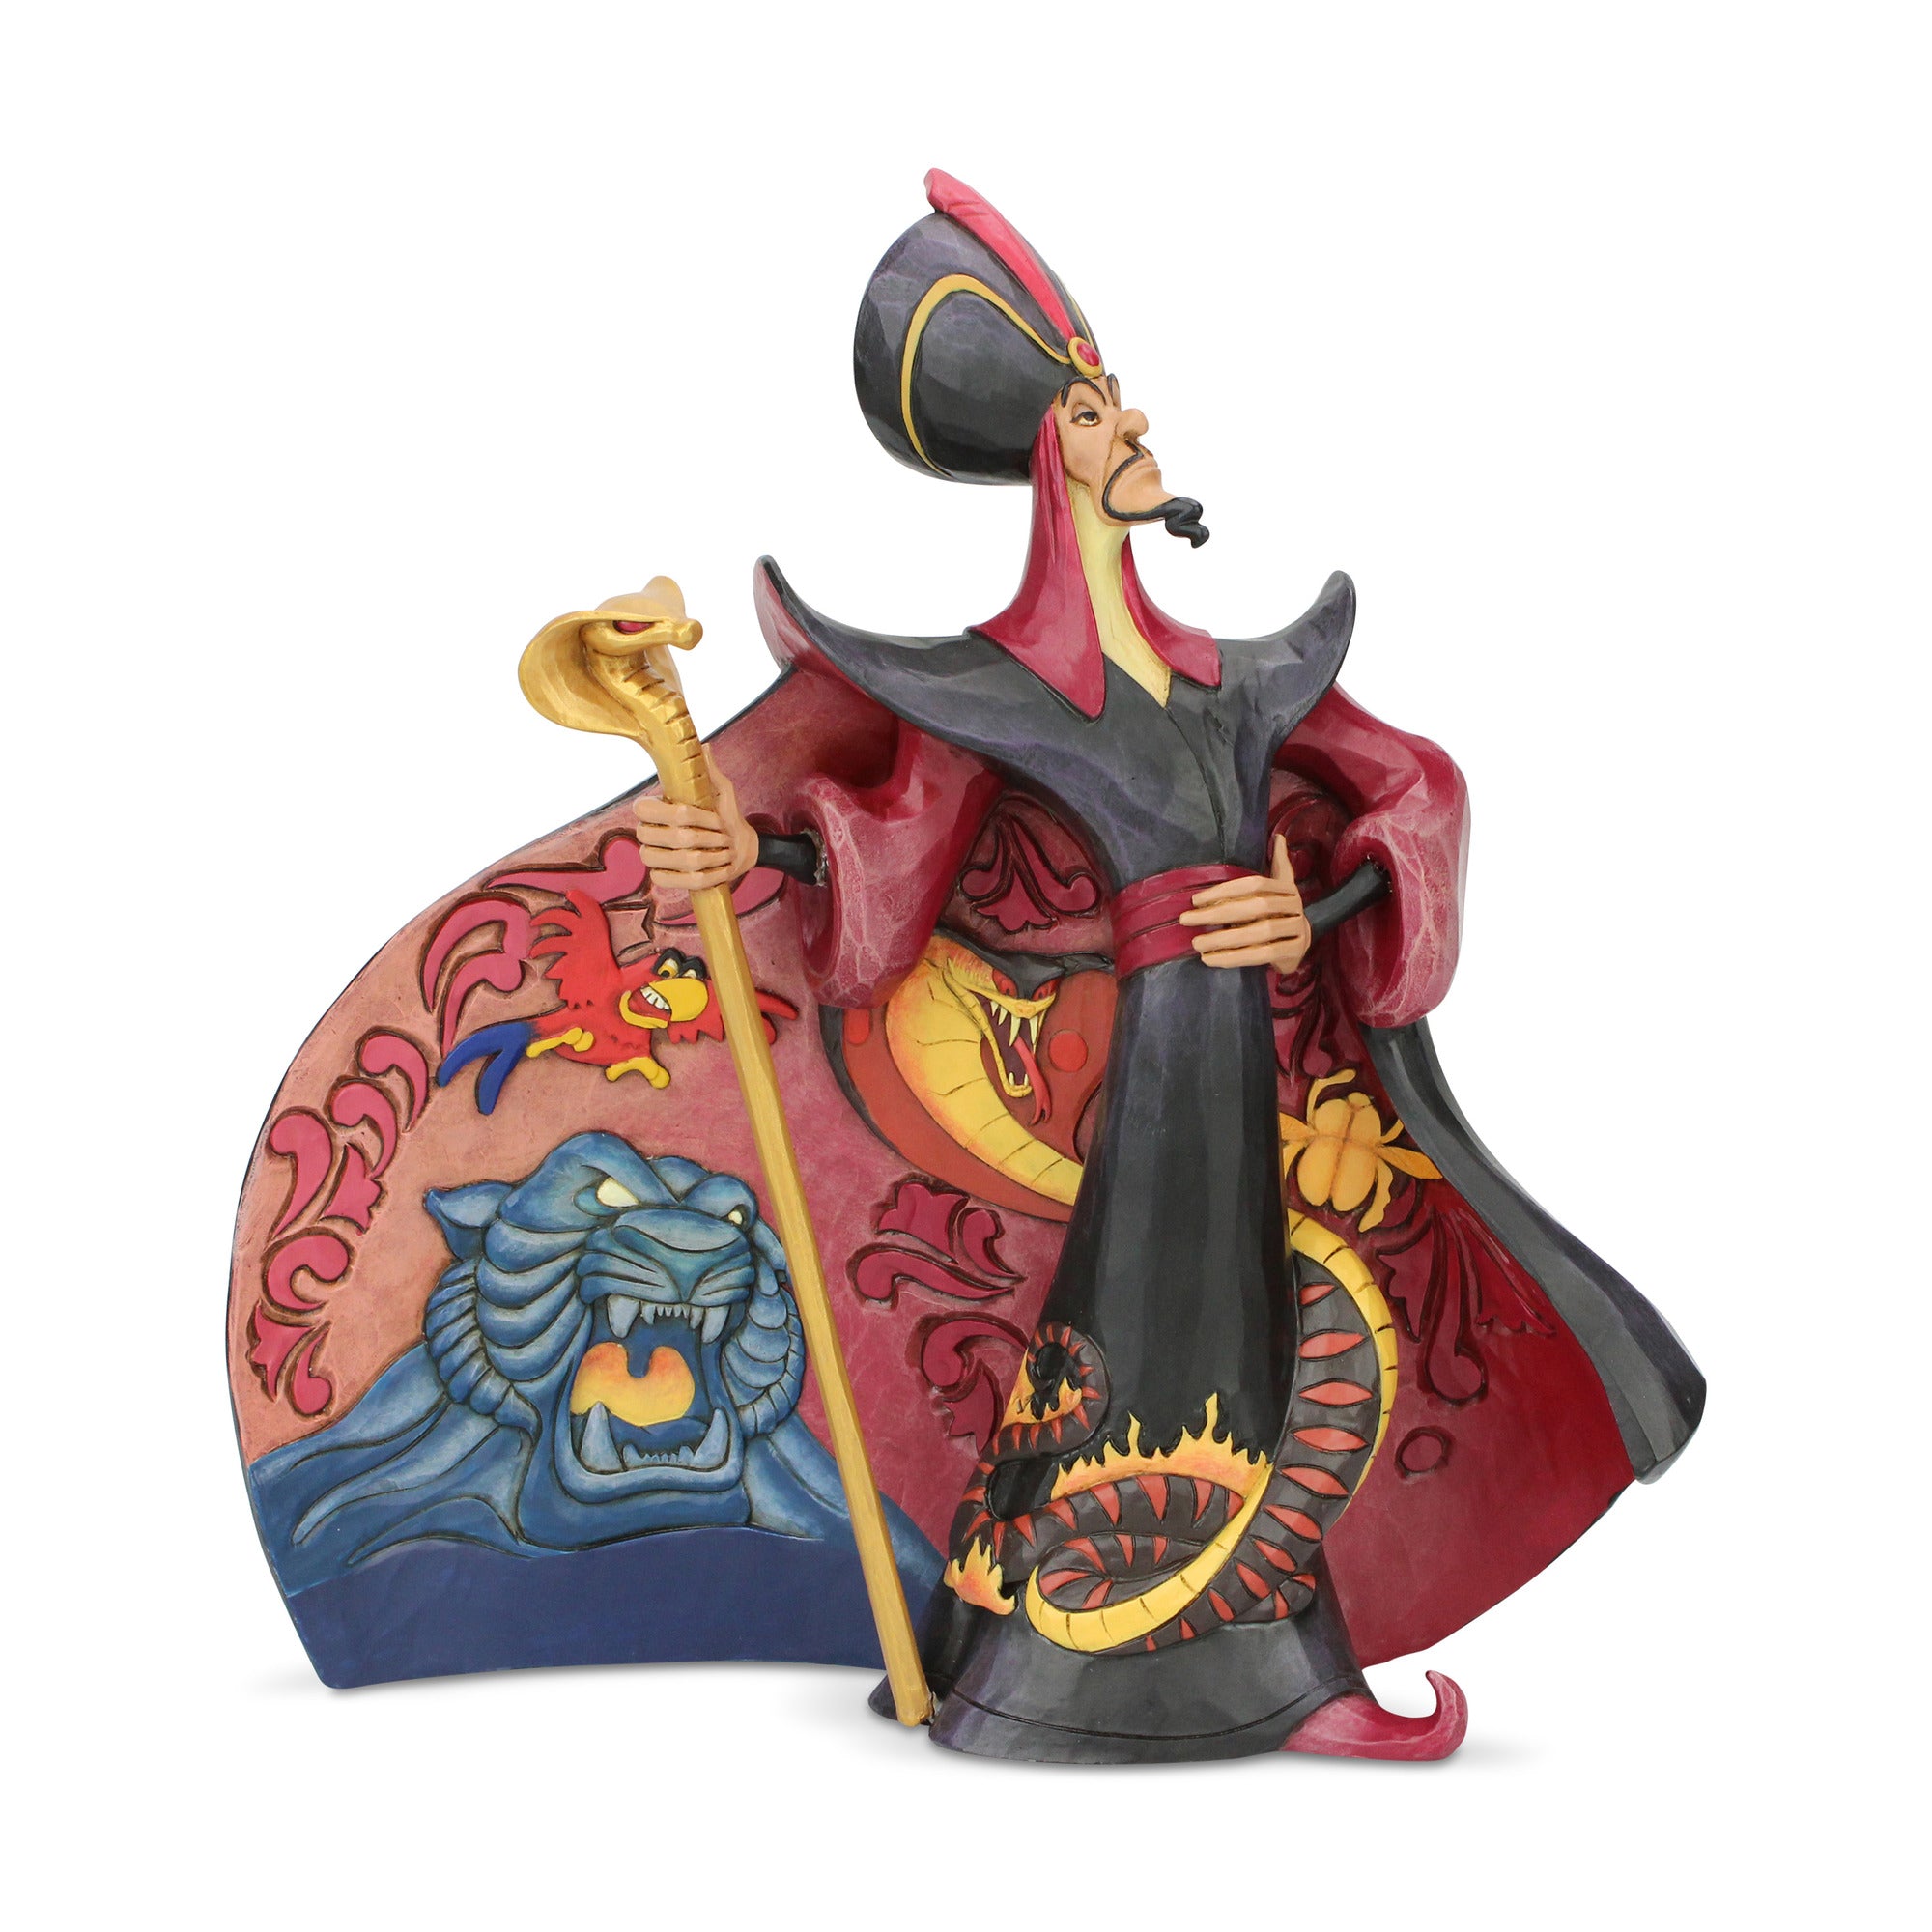 Aladdin - Jafar Figurine